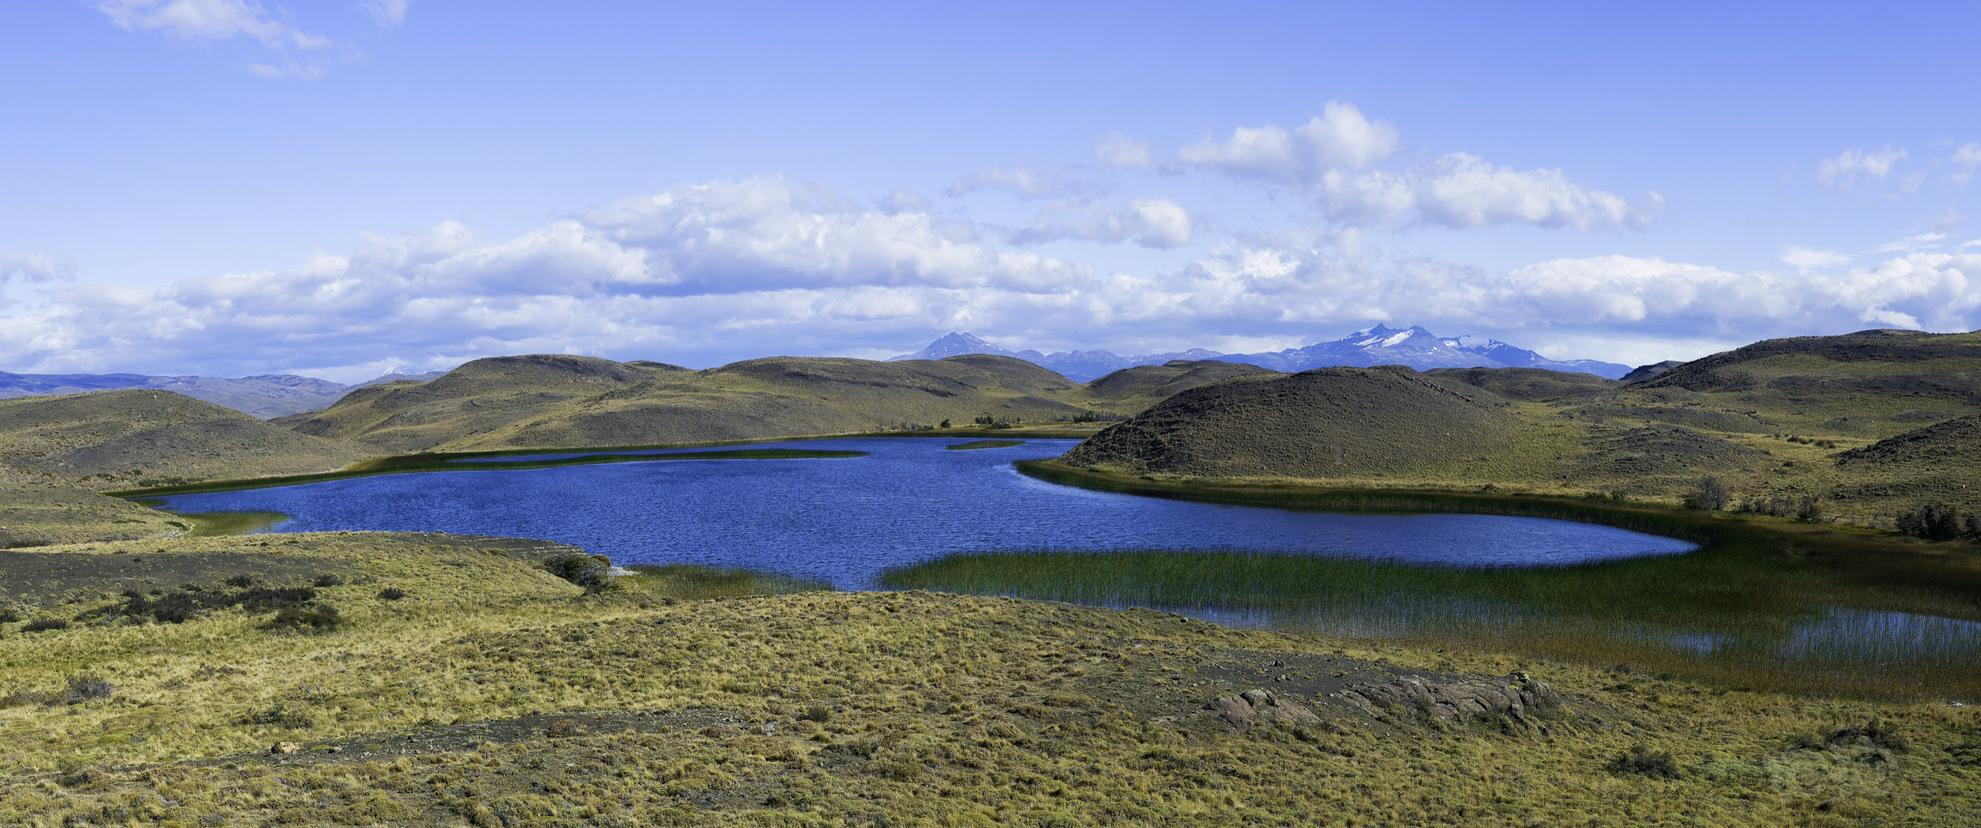 托雷斯德尔潘恩国家公园中湛蓝的湖泊-图1